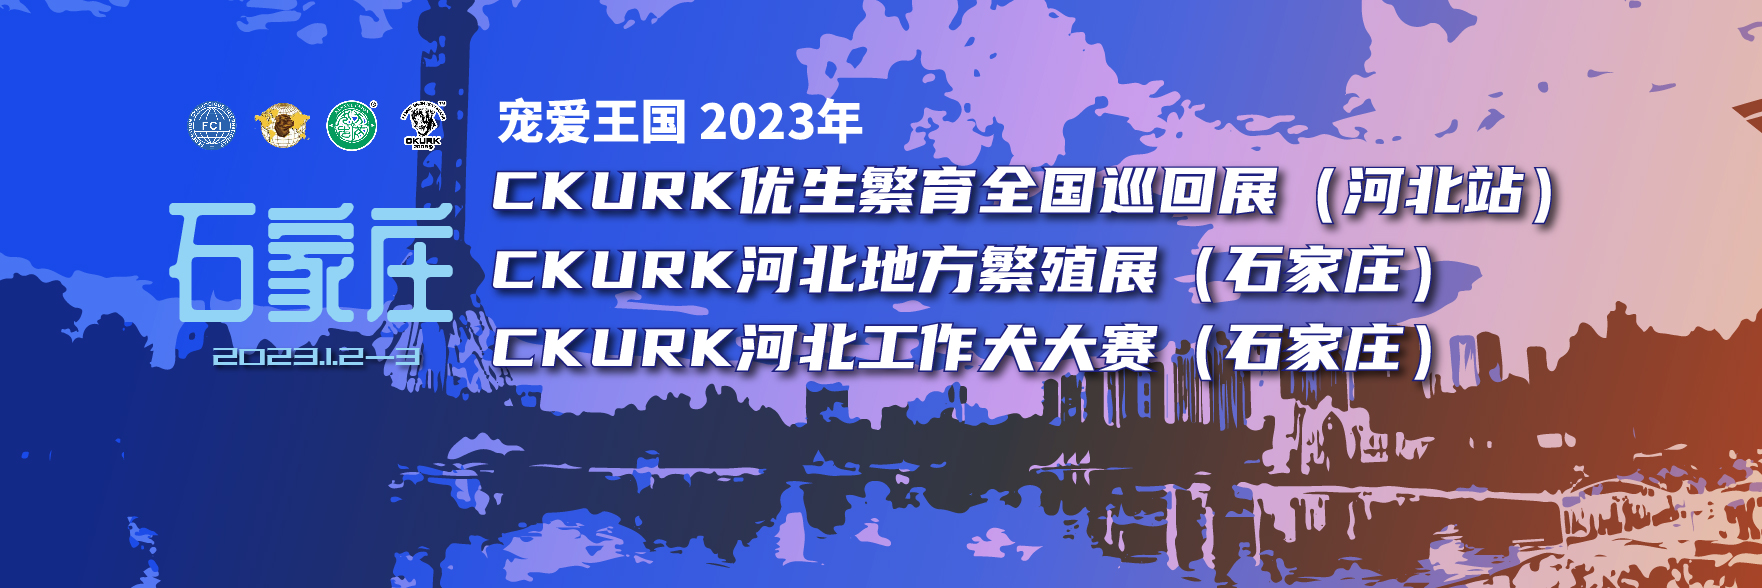 宠爱王国2023年CKURK优生繁育全国巡回展（河北站）、河北地方繁殖展（石家庄）、河北工作大赛报名通知